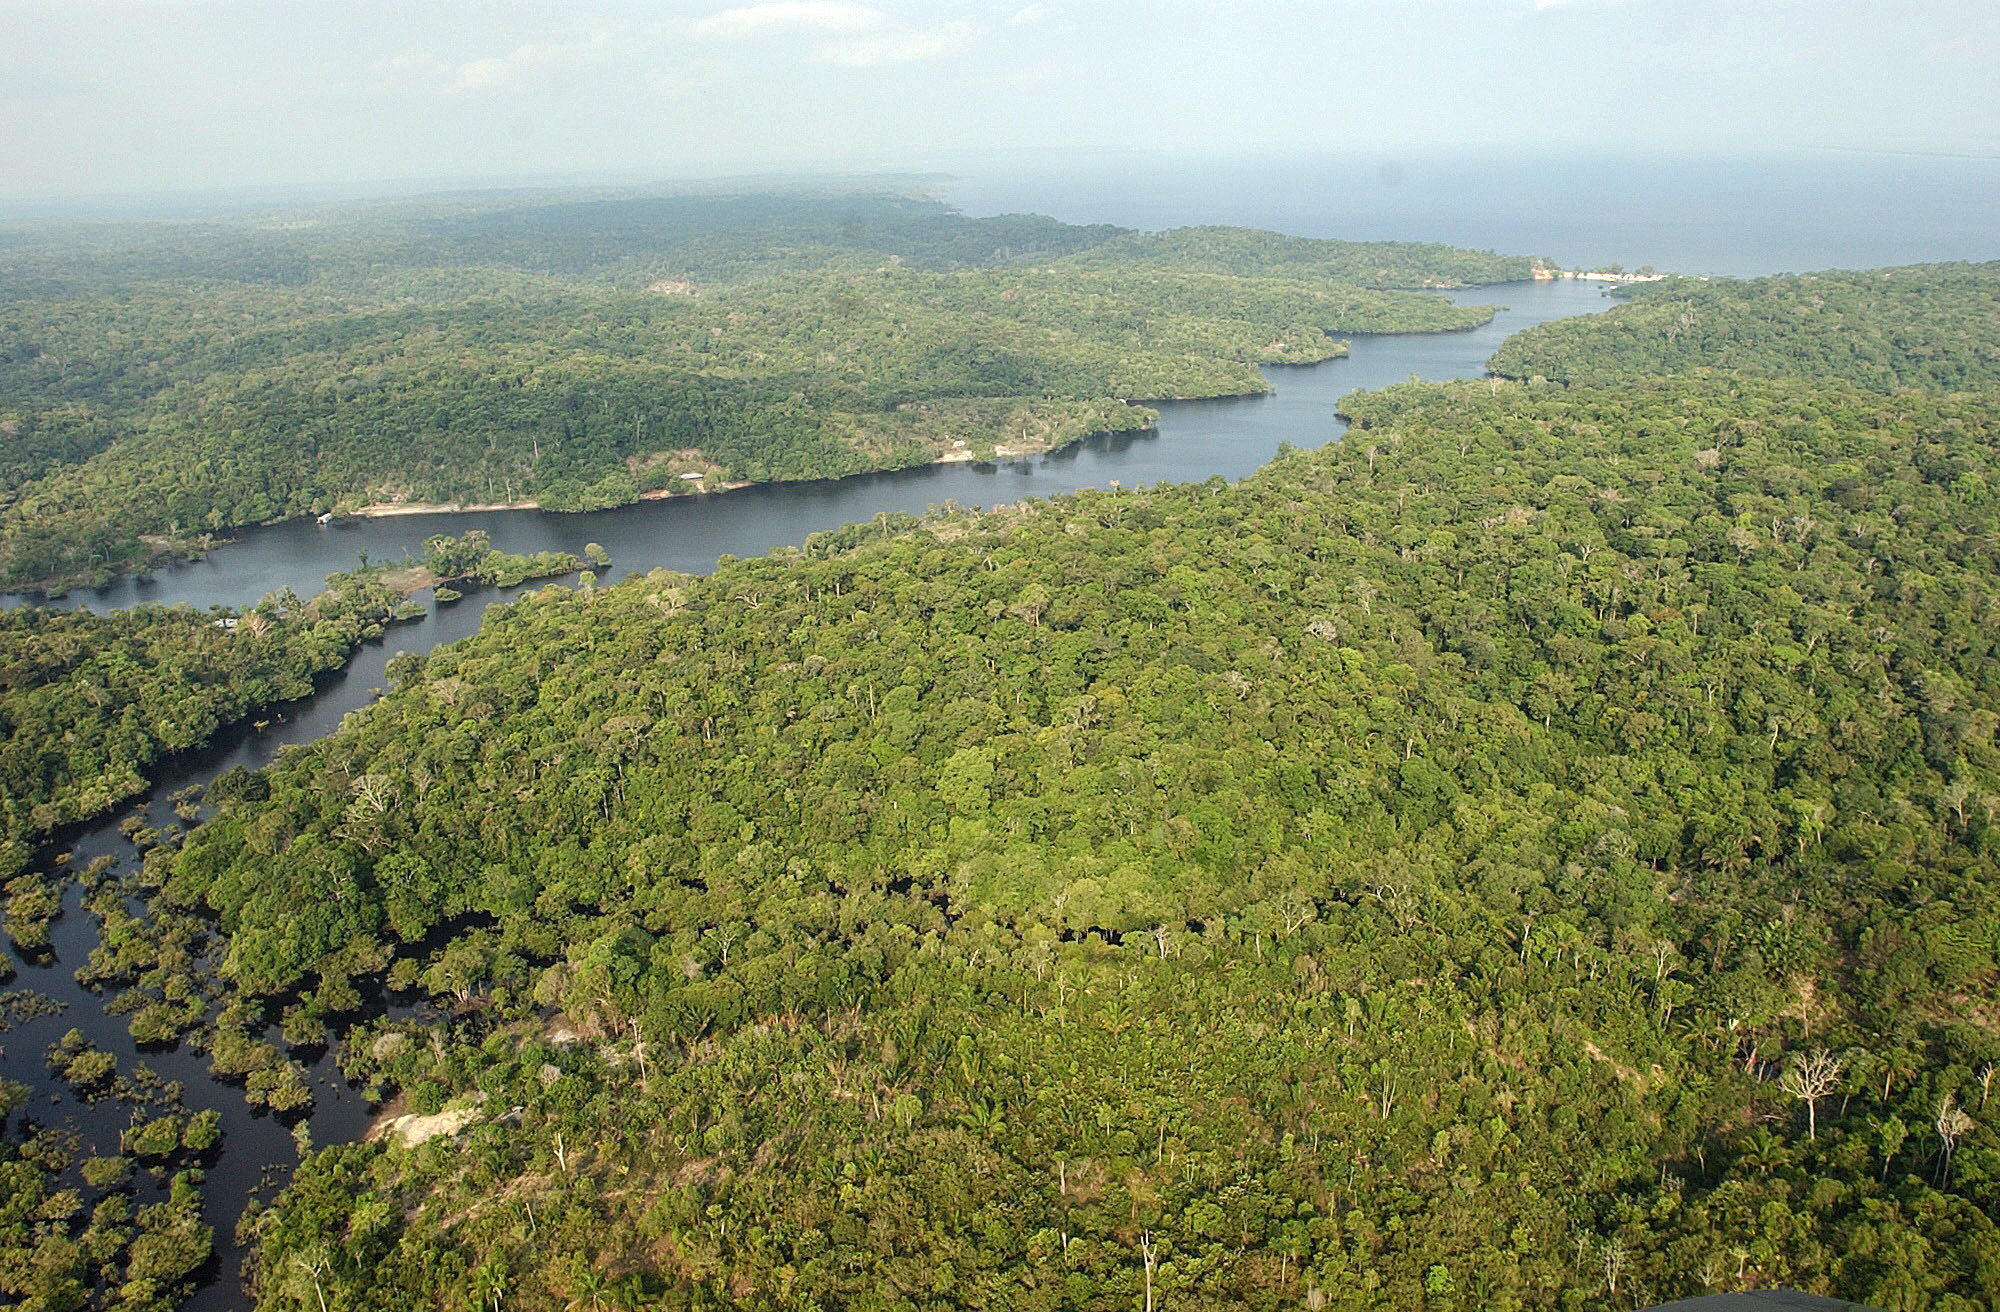 La tierra oscura amazónica puede ser clave en la reforestación de áreas con degradación ecológica